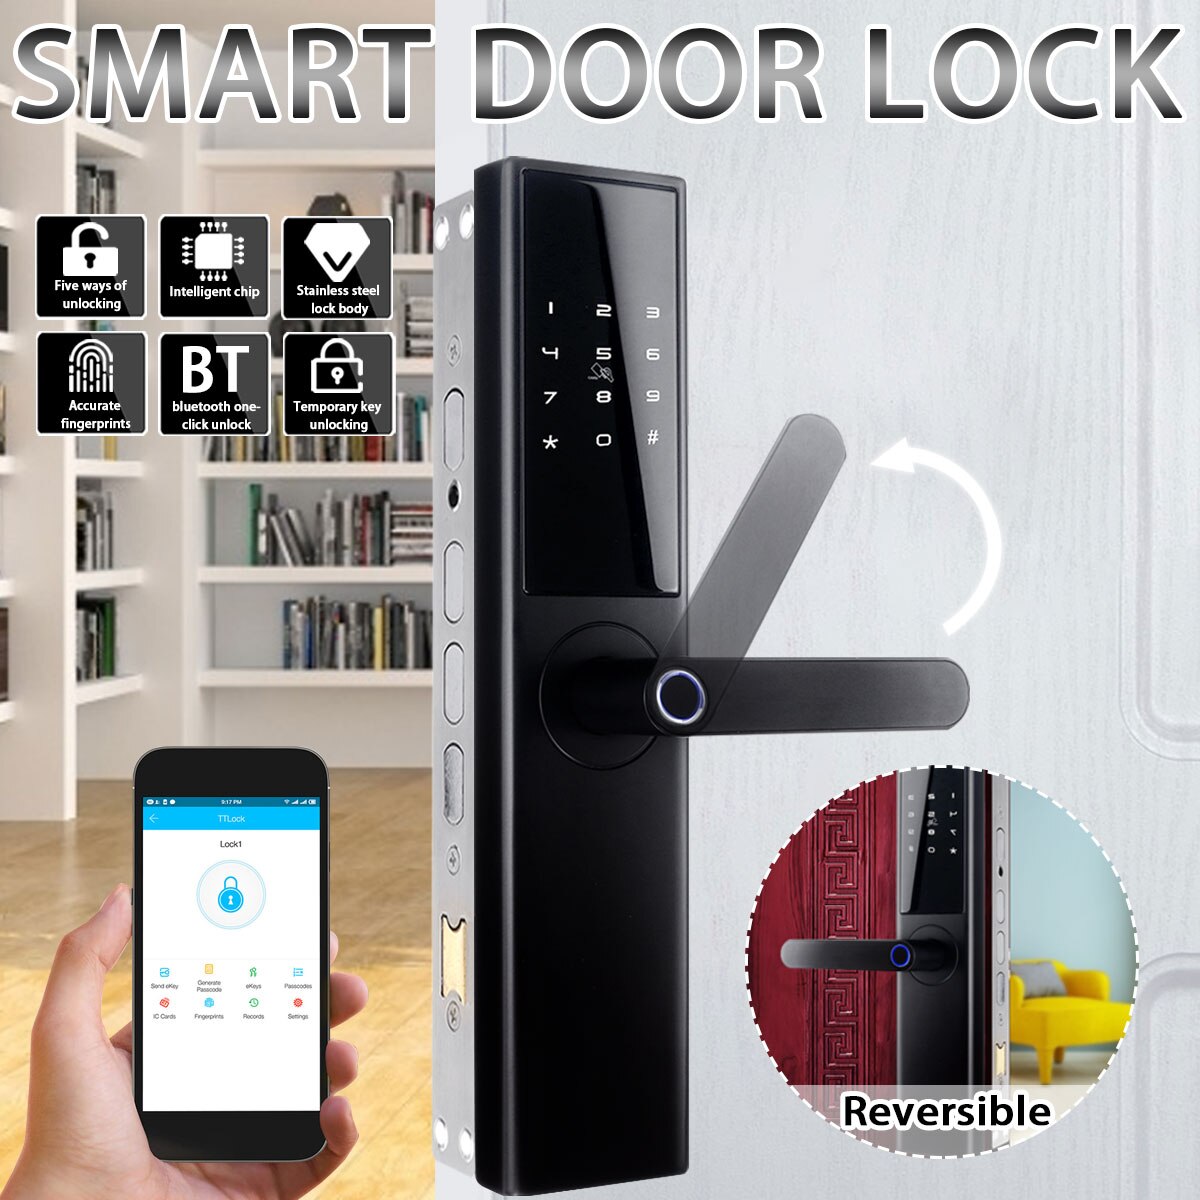 Smart Electronic Lock Fingerprint Door Lock Security Intelligent Lock Wifi Door Lock With bluetooth Password APP Unlock 5 Ways